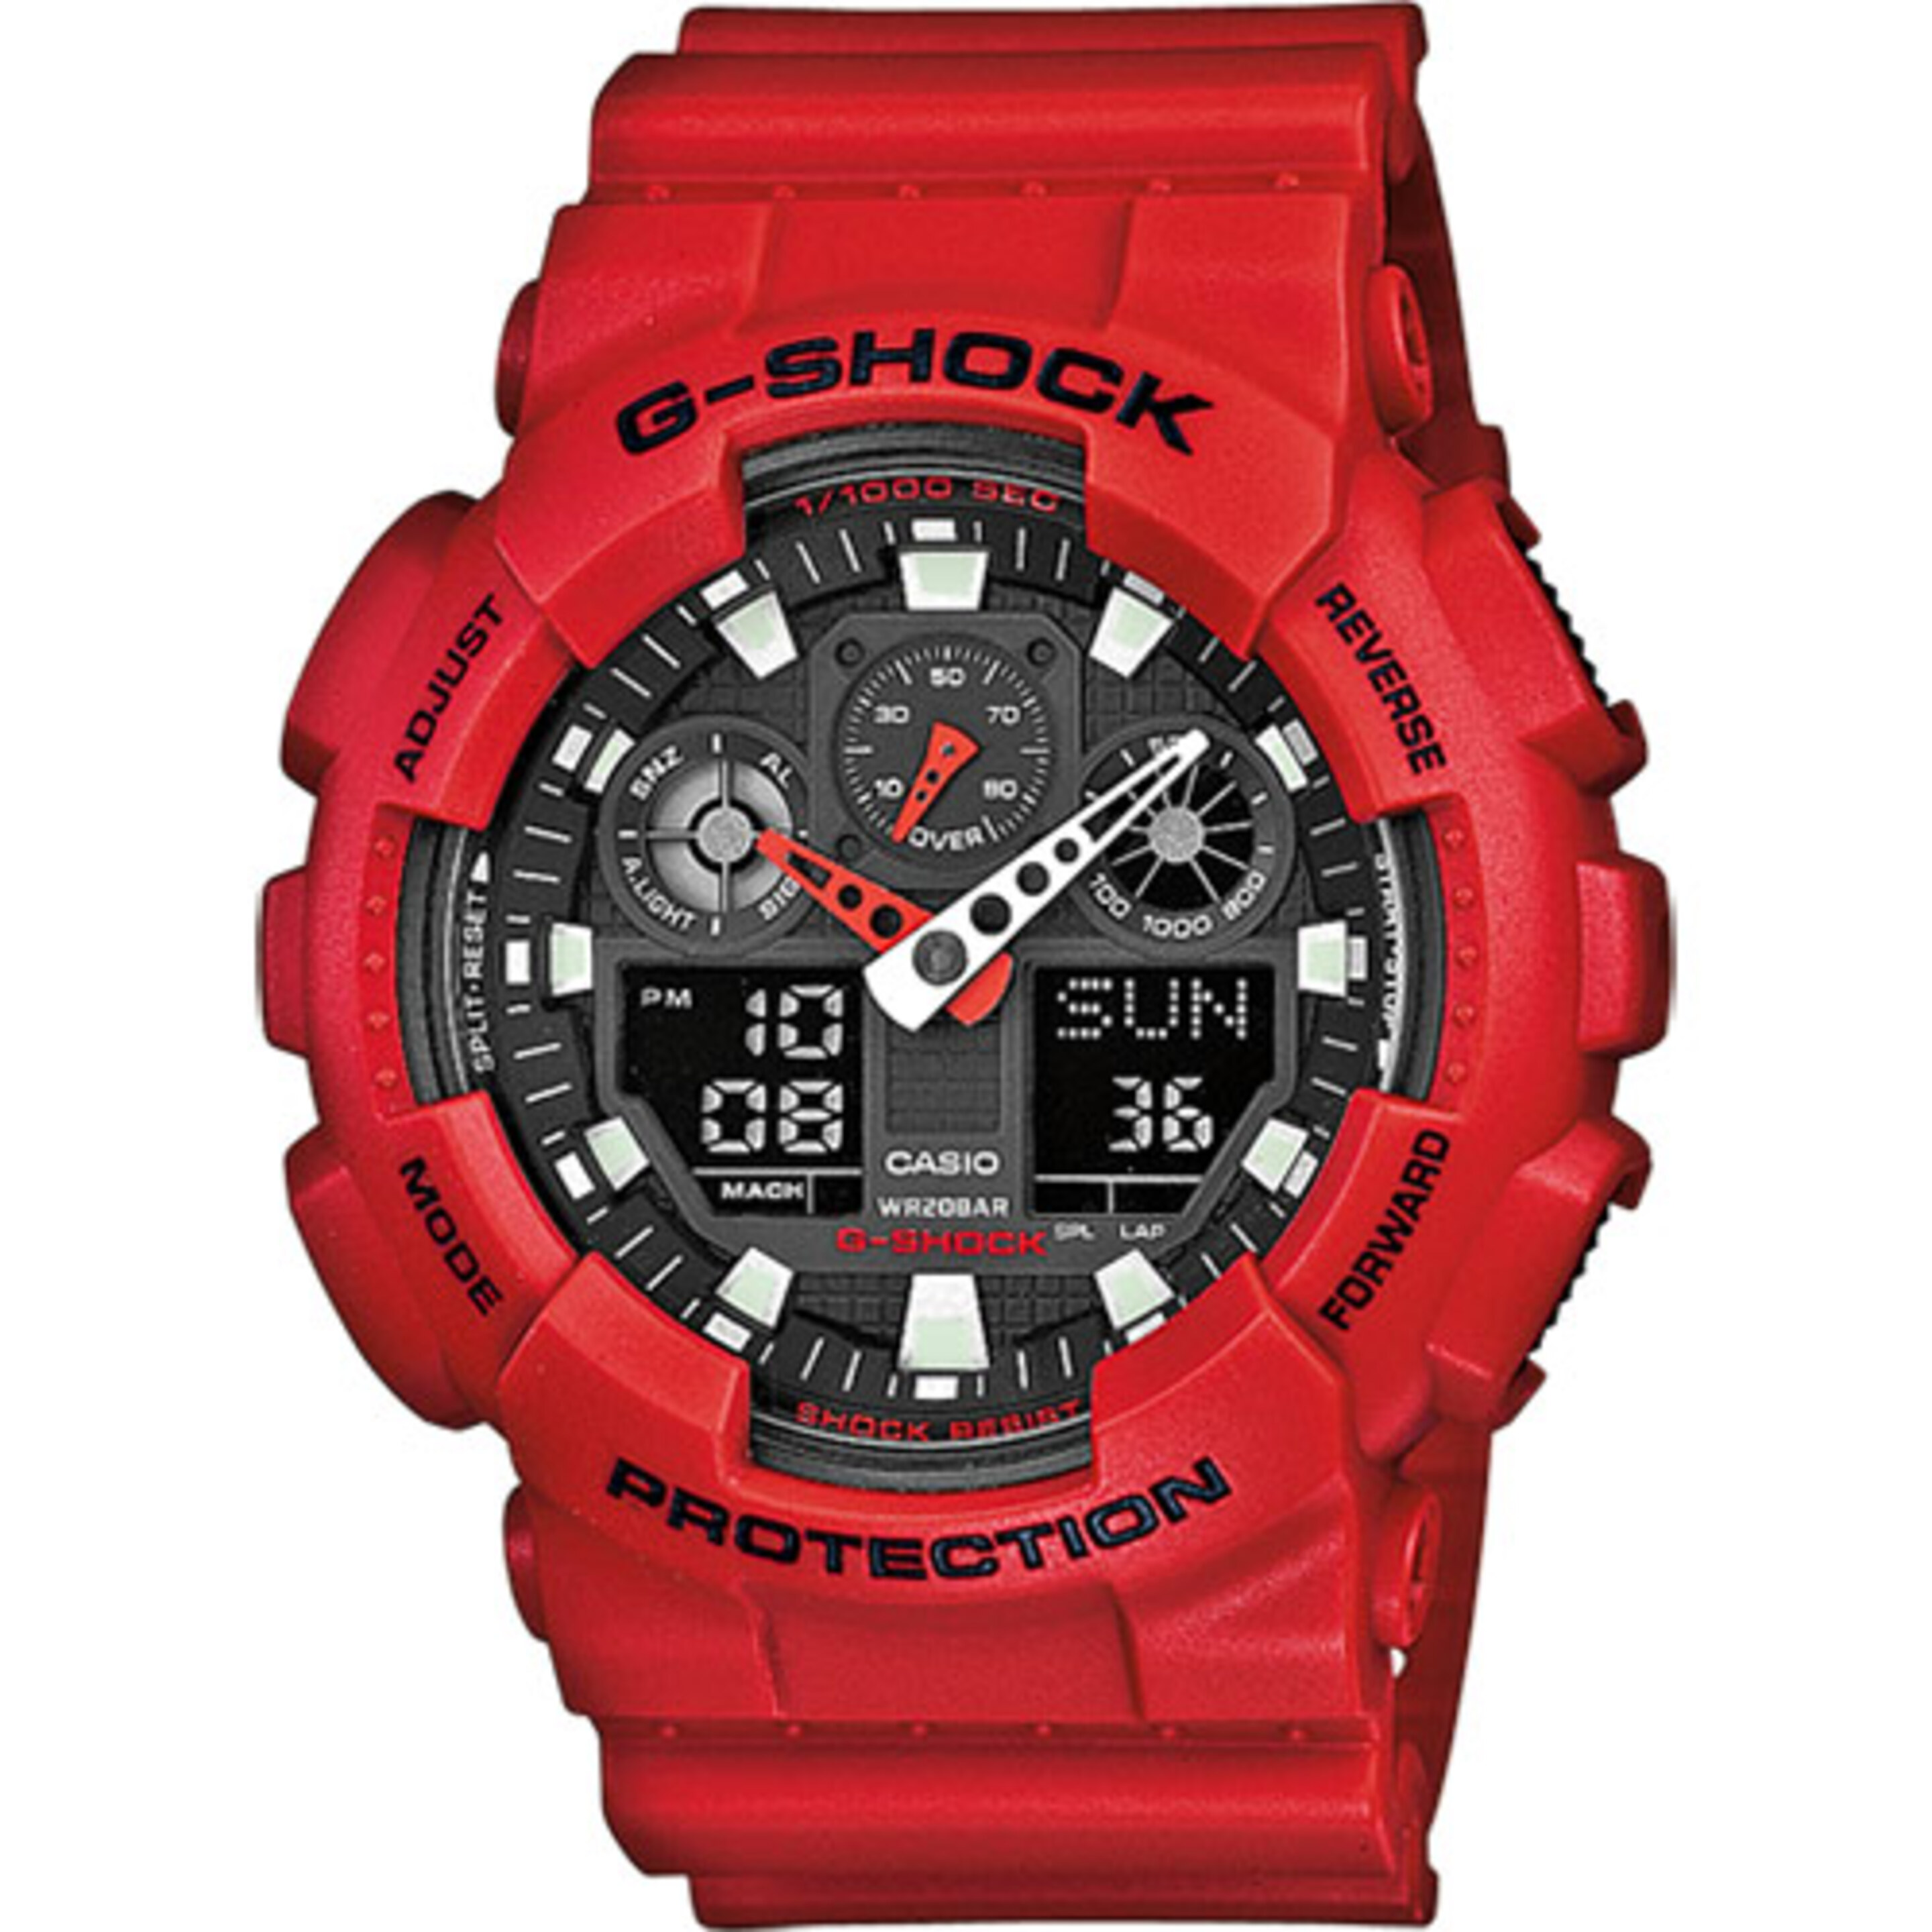 Reloj Casio G-shock Ga-100b-4aer - rojo - 